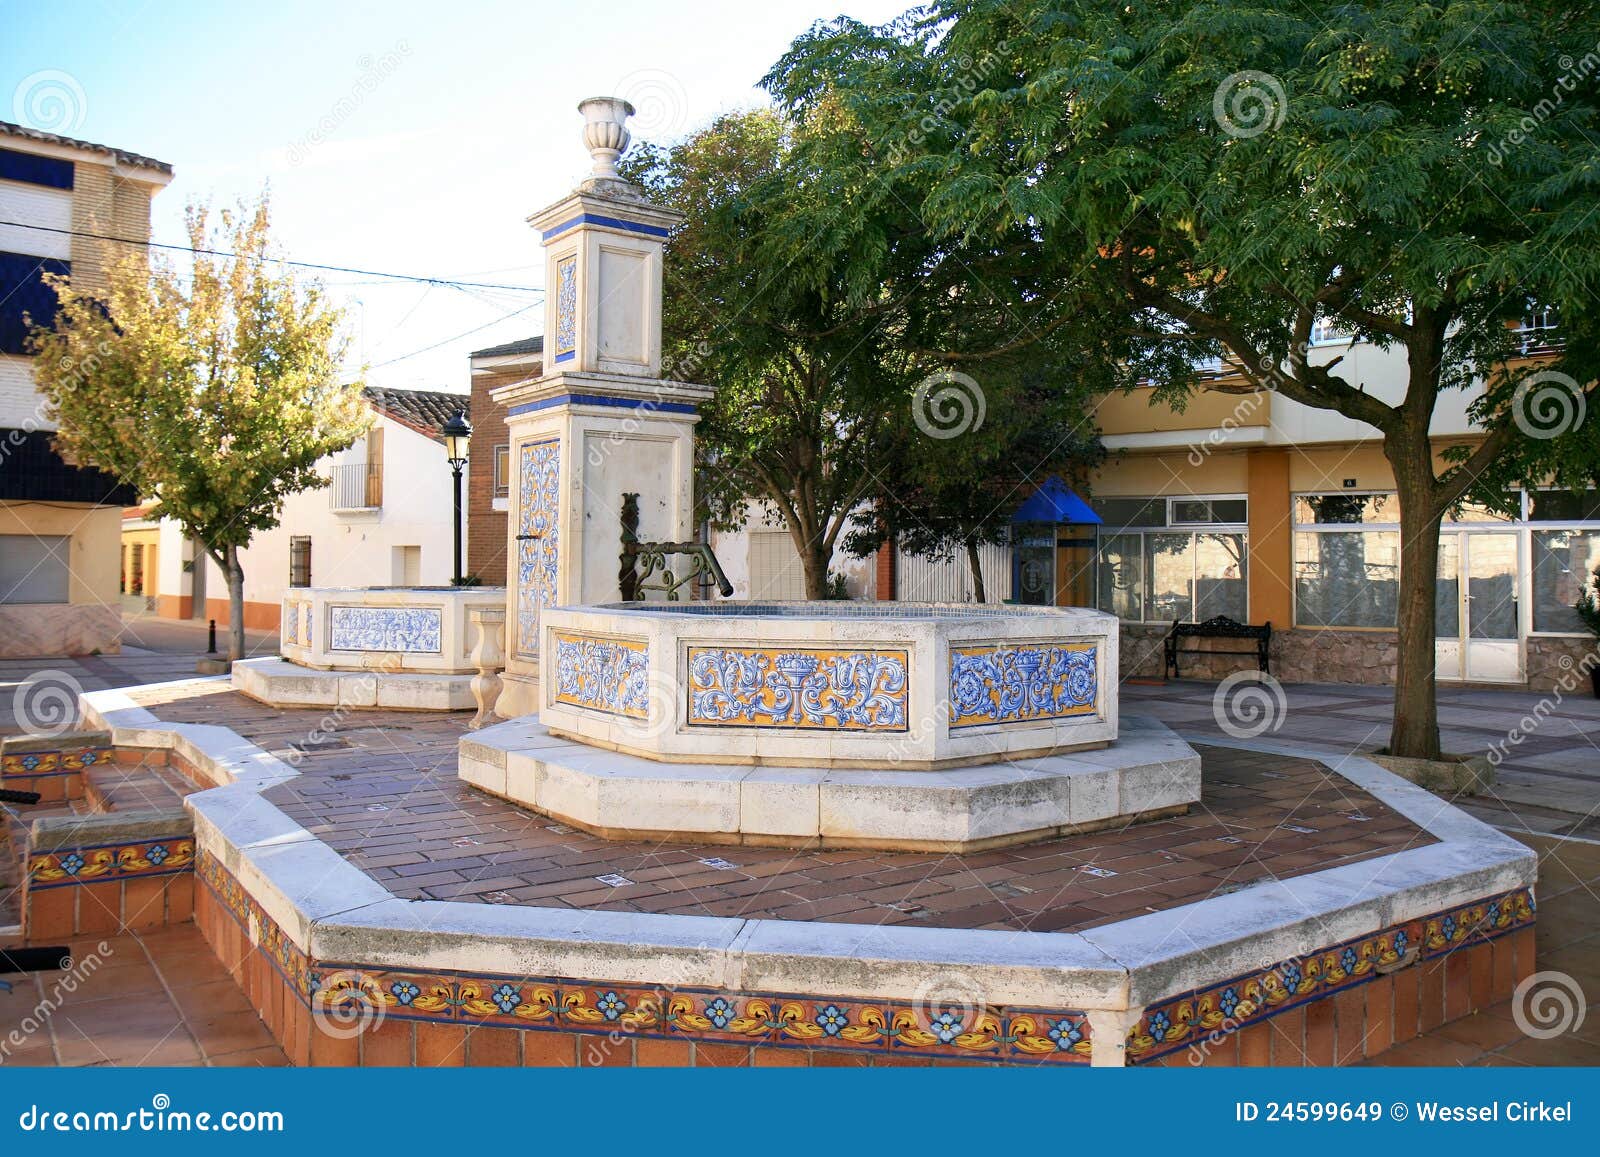 fountain with spanish azulejos in casas de ves